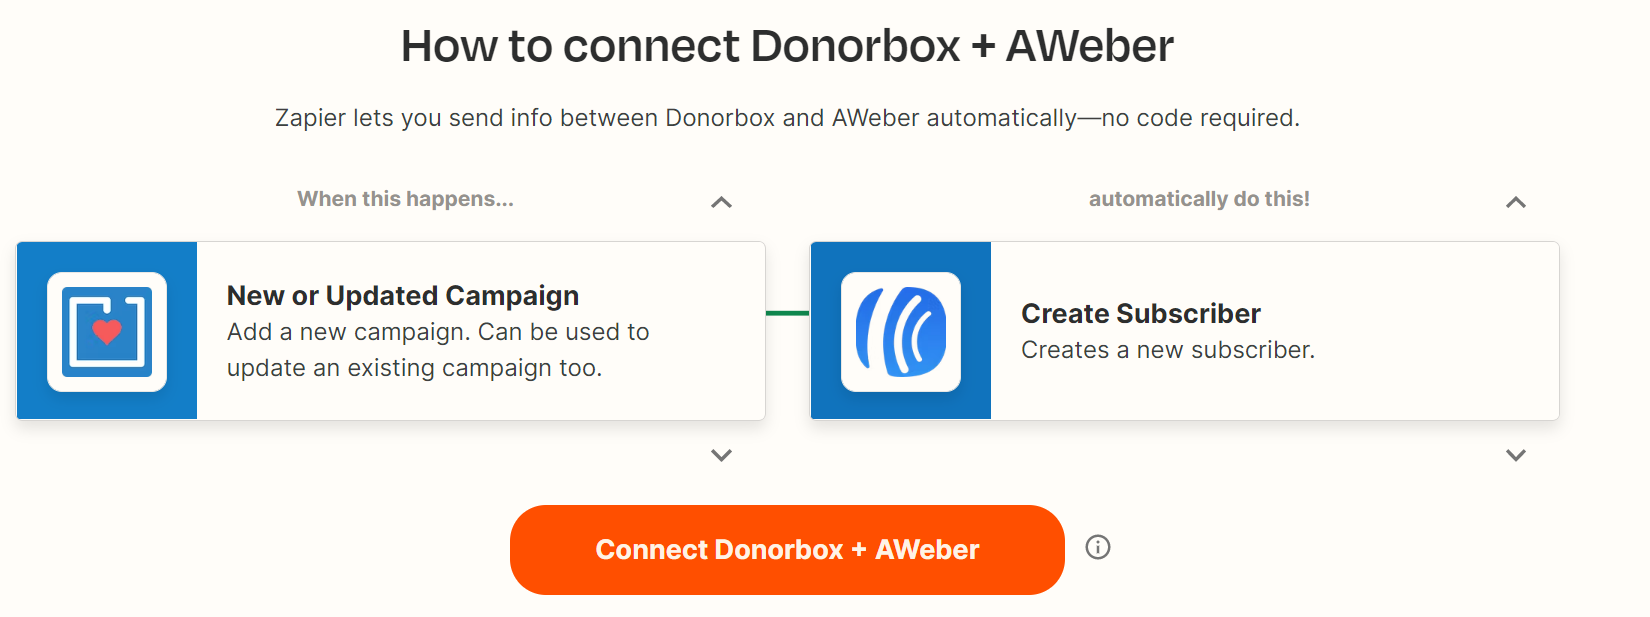 cheap mailchimp alternatives - Donorbox & AWeber